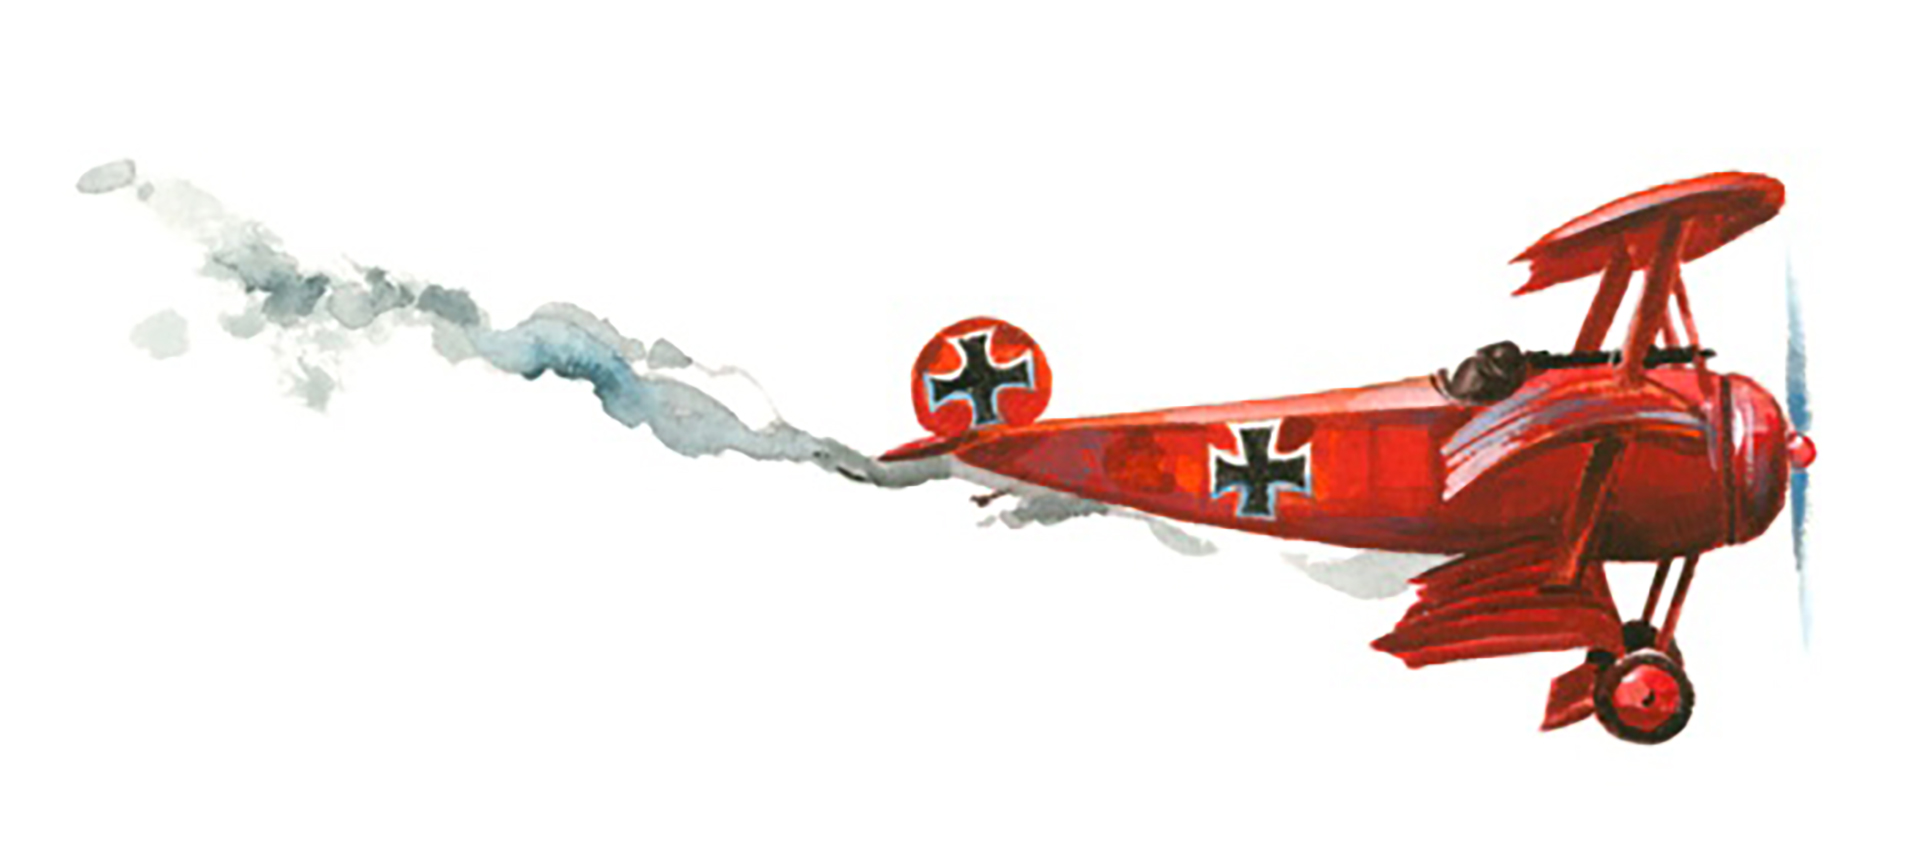 Su temido avión rojo. El piloto habría elegido ese color para distinguirse especialmente en los duelos aéreos. 